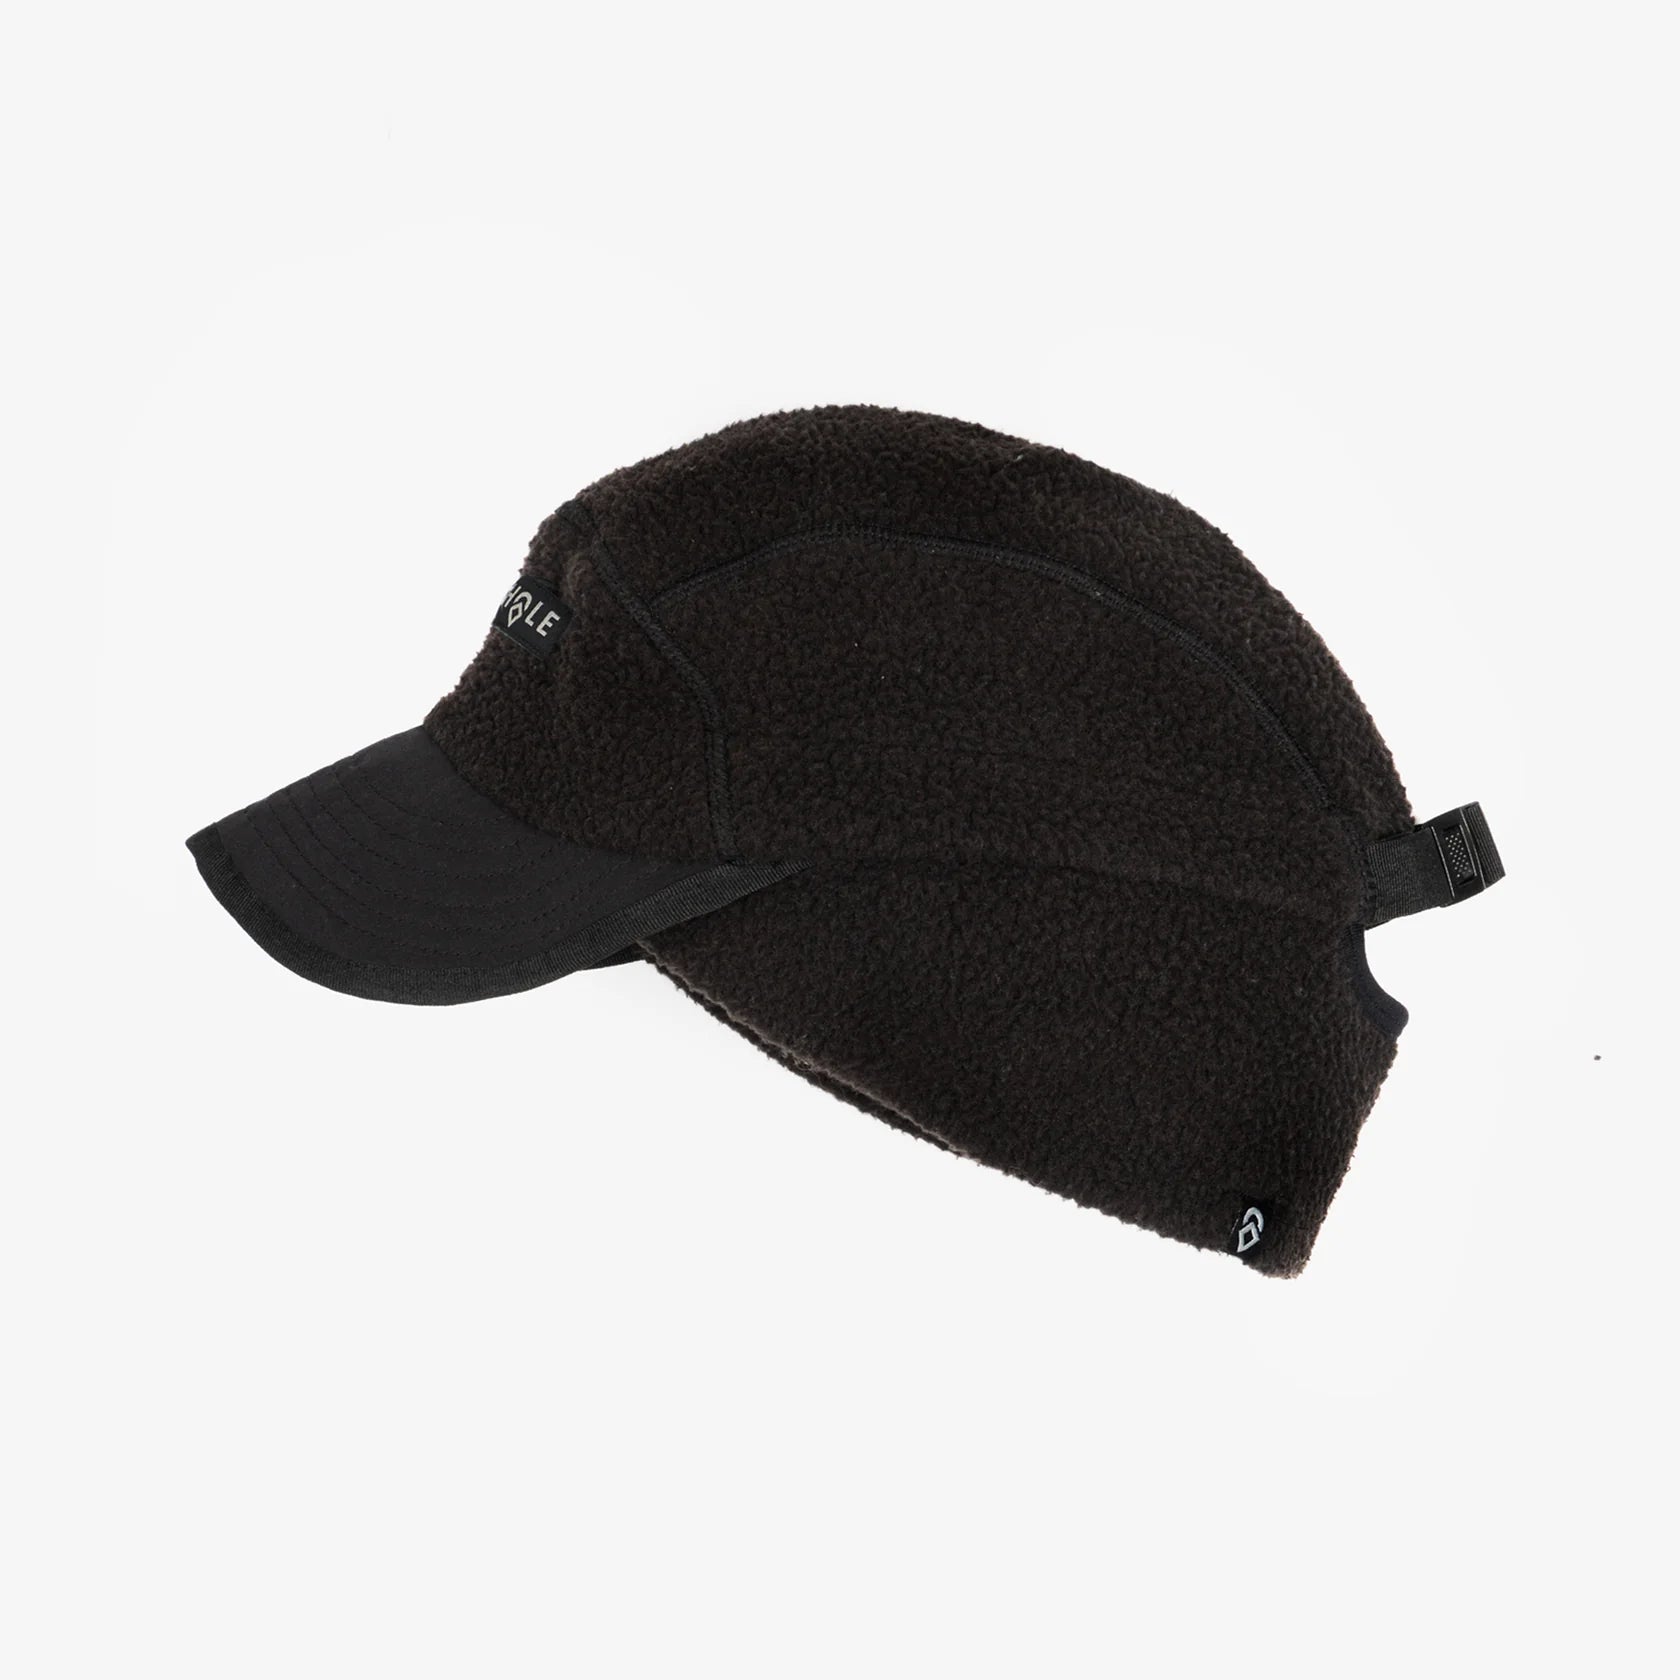 AIRHOLE Guide Polartec Shearling Fleece Hat Black Men's Hats Airhole 